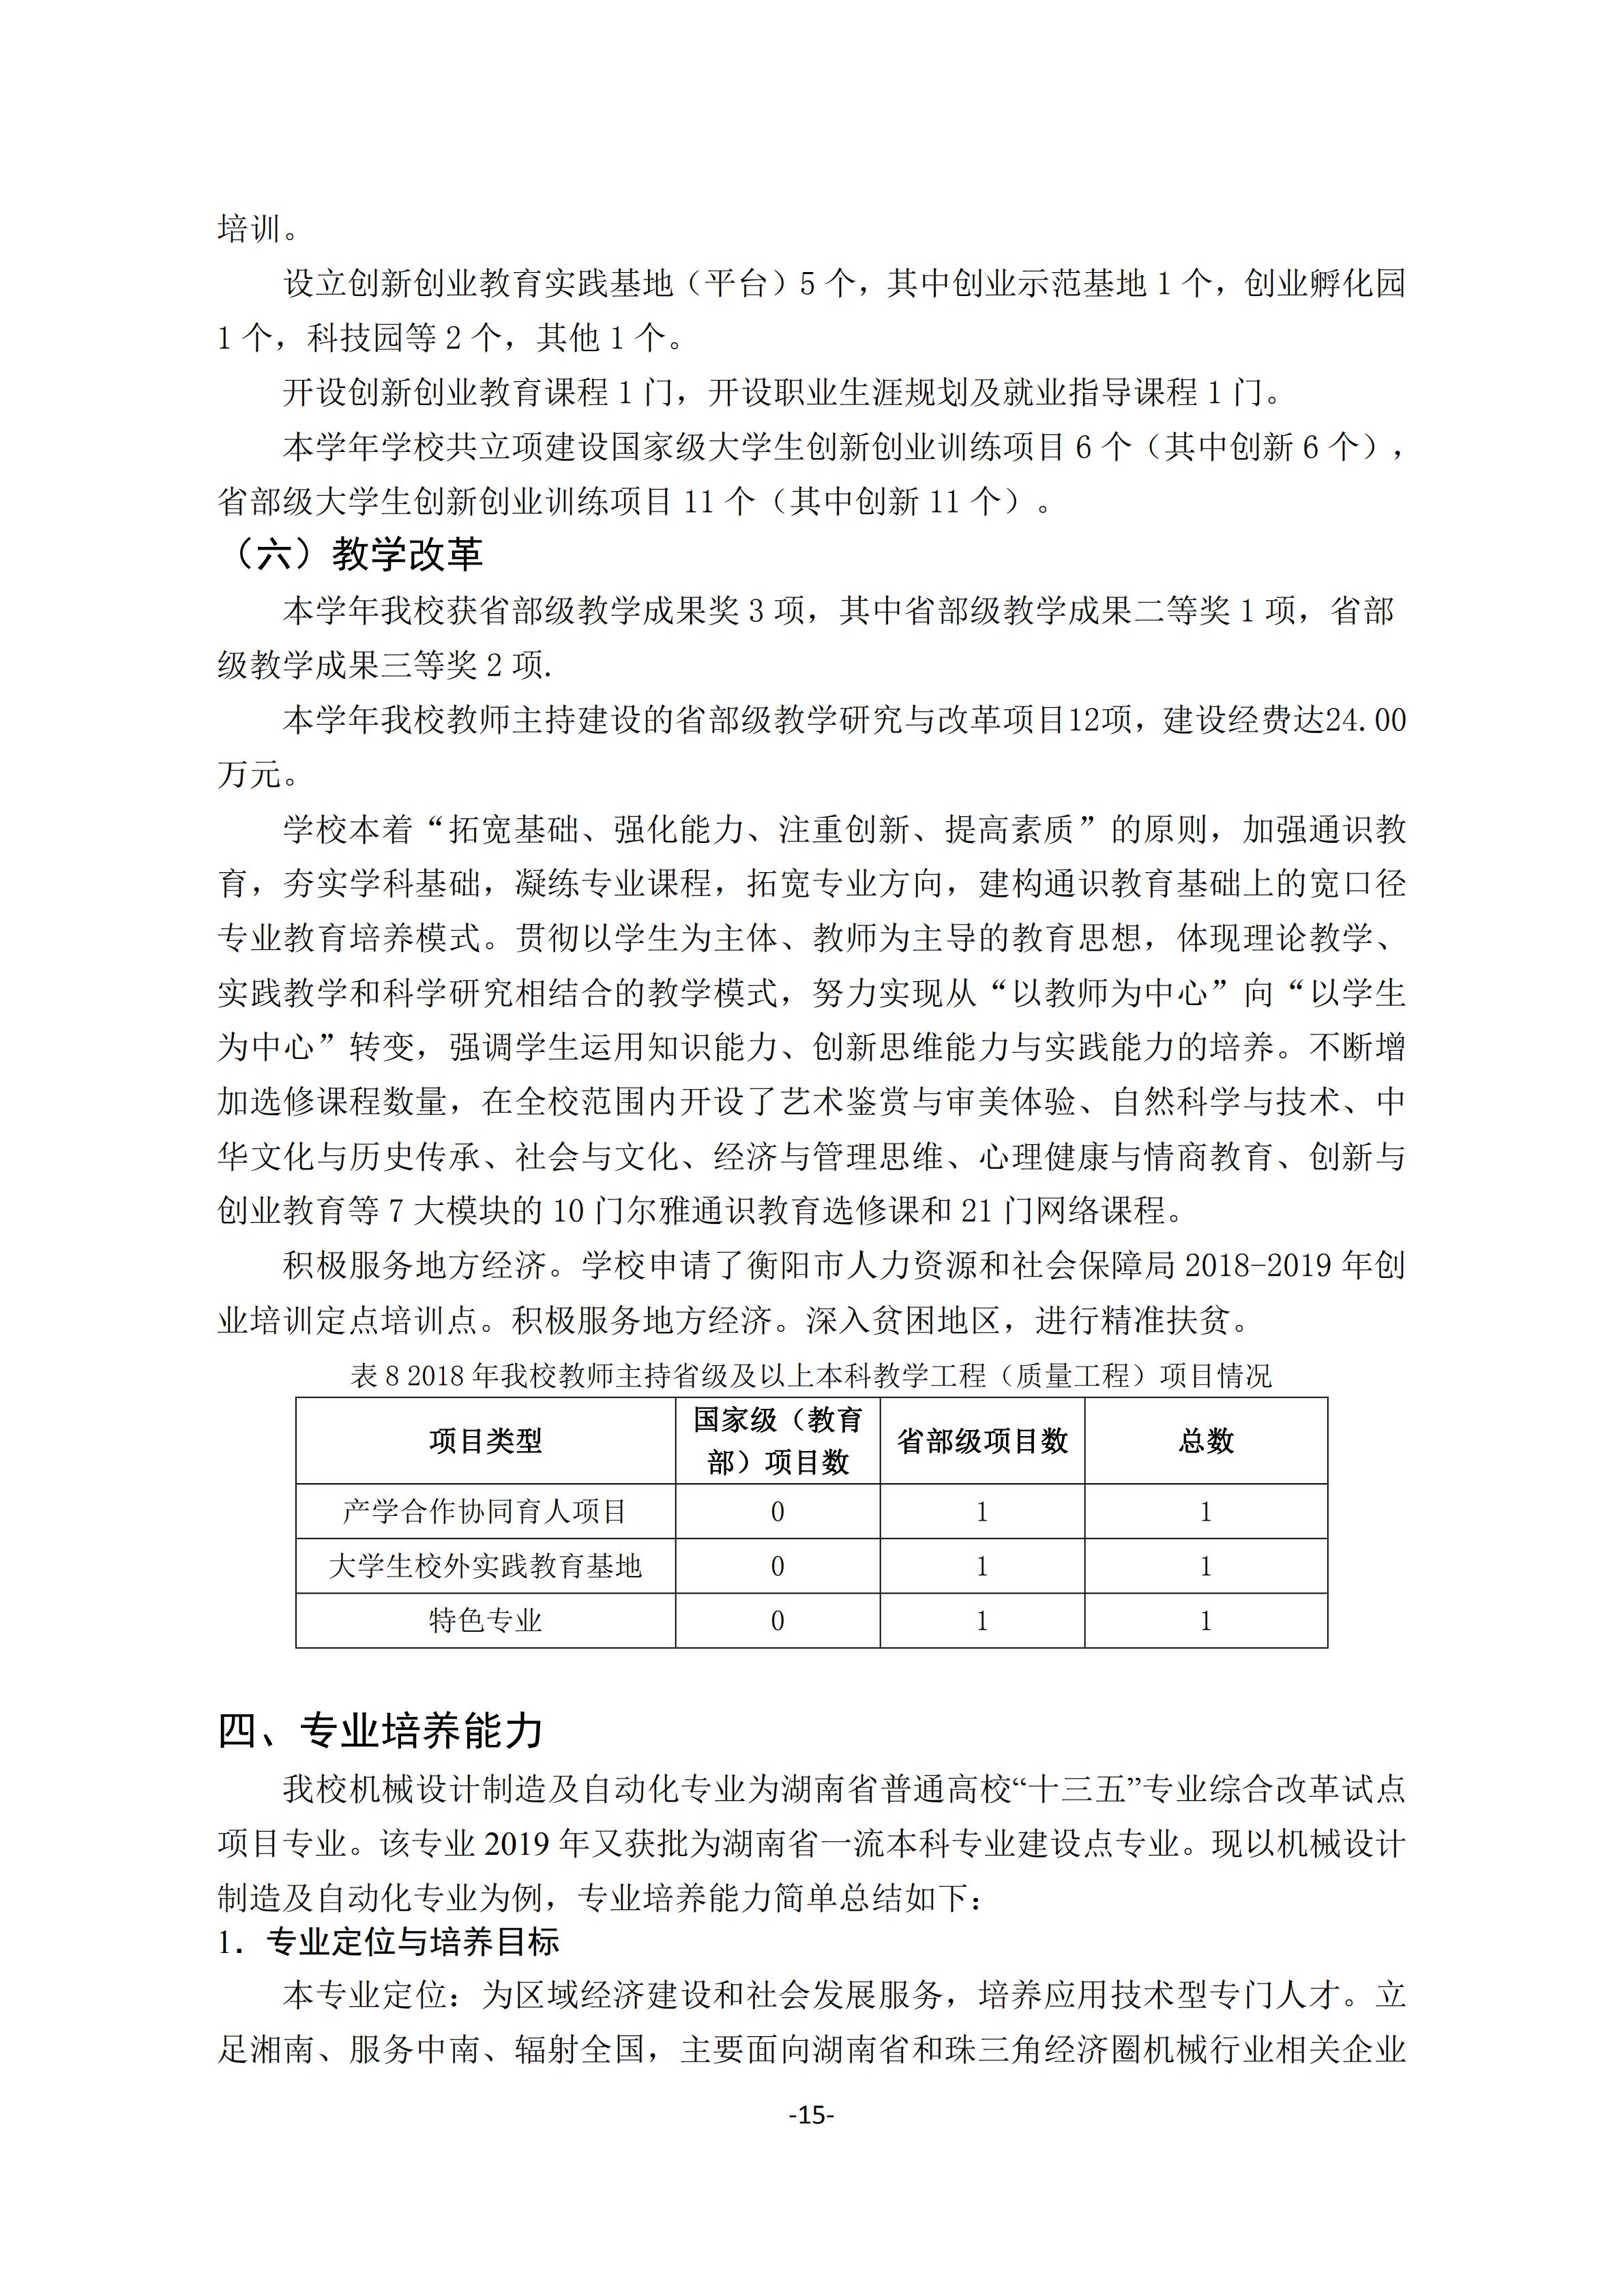 1.湖南交通工程学院2018-2019学年本科教学质量报告_14.jpg